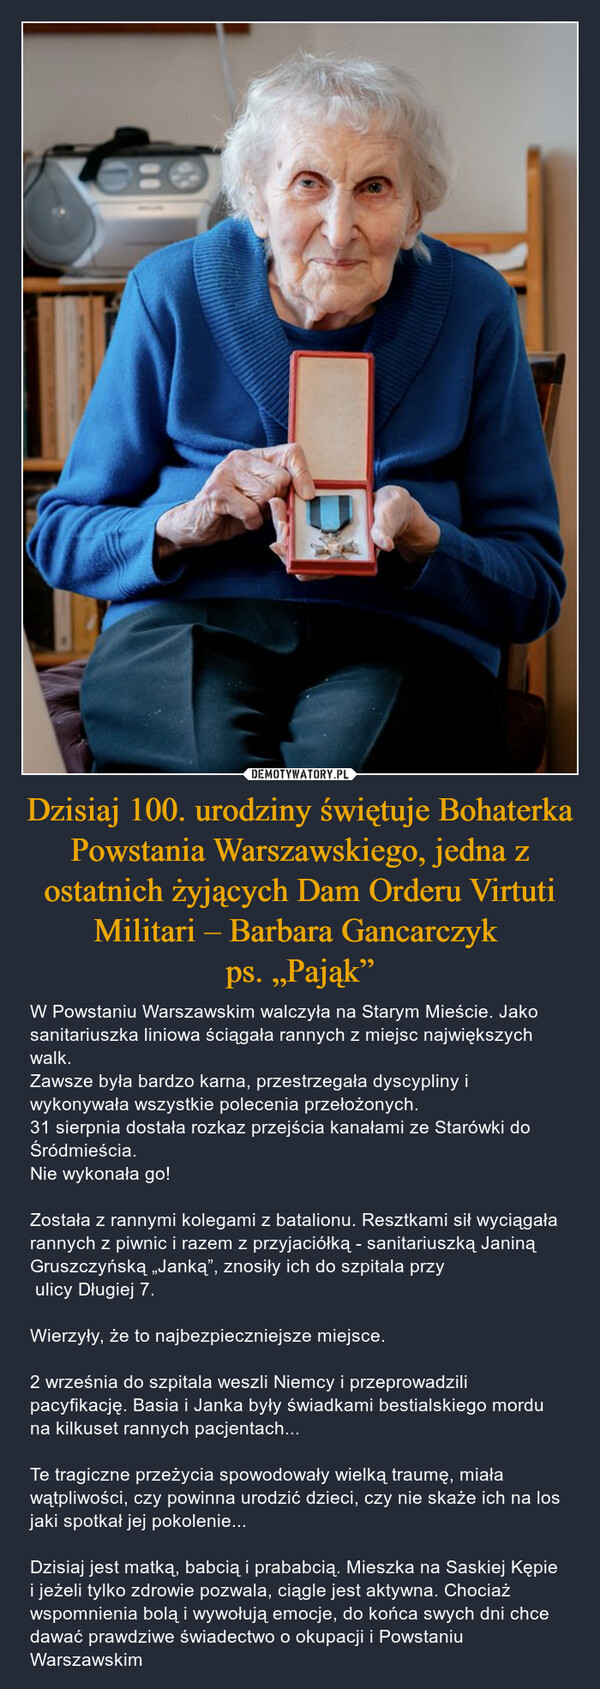 Dzisiaj 100. urodziny świętuje Bohaterka Powstania Warszawskiego, jedna z ostatnich żyjących Dam Orderu Virtuti Militari – Barbara Gancarczyk 
ps. „Pająk”